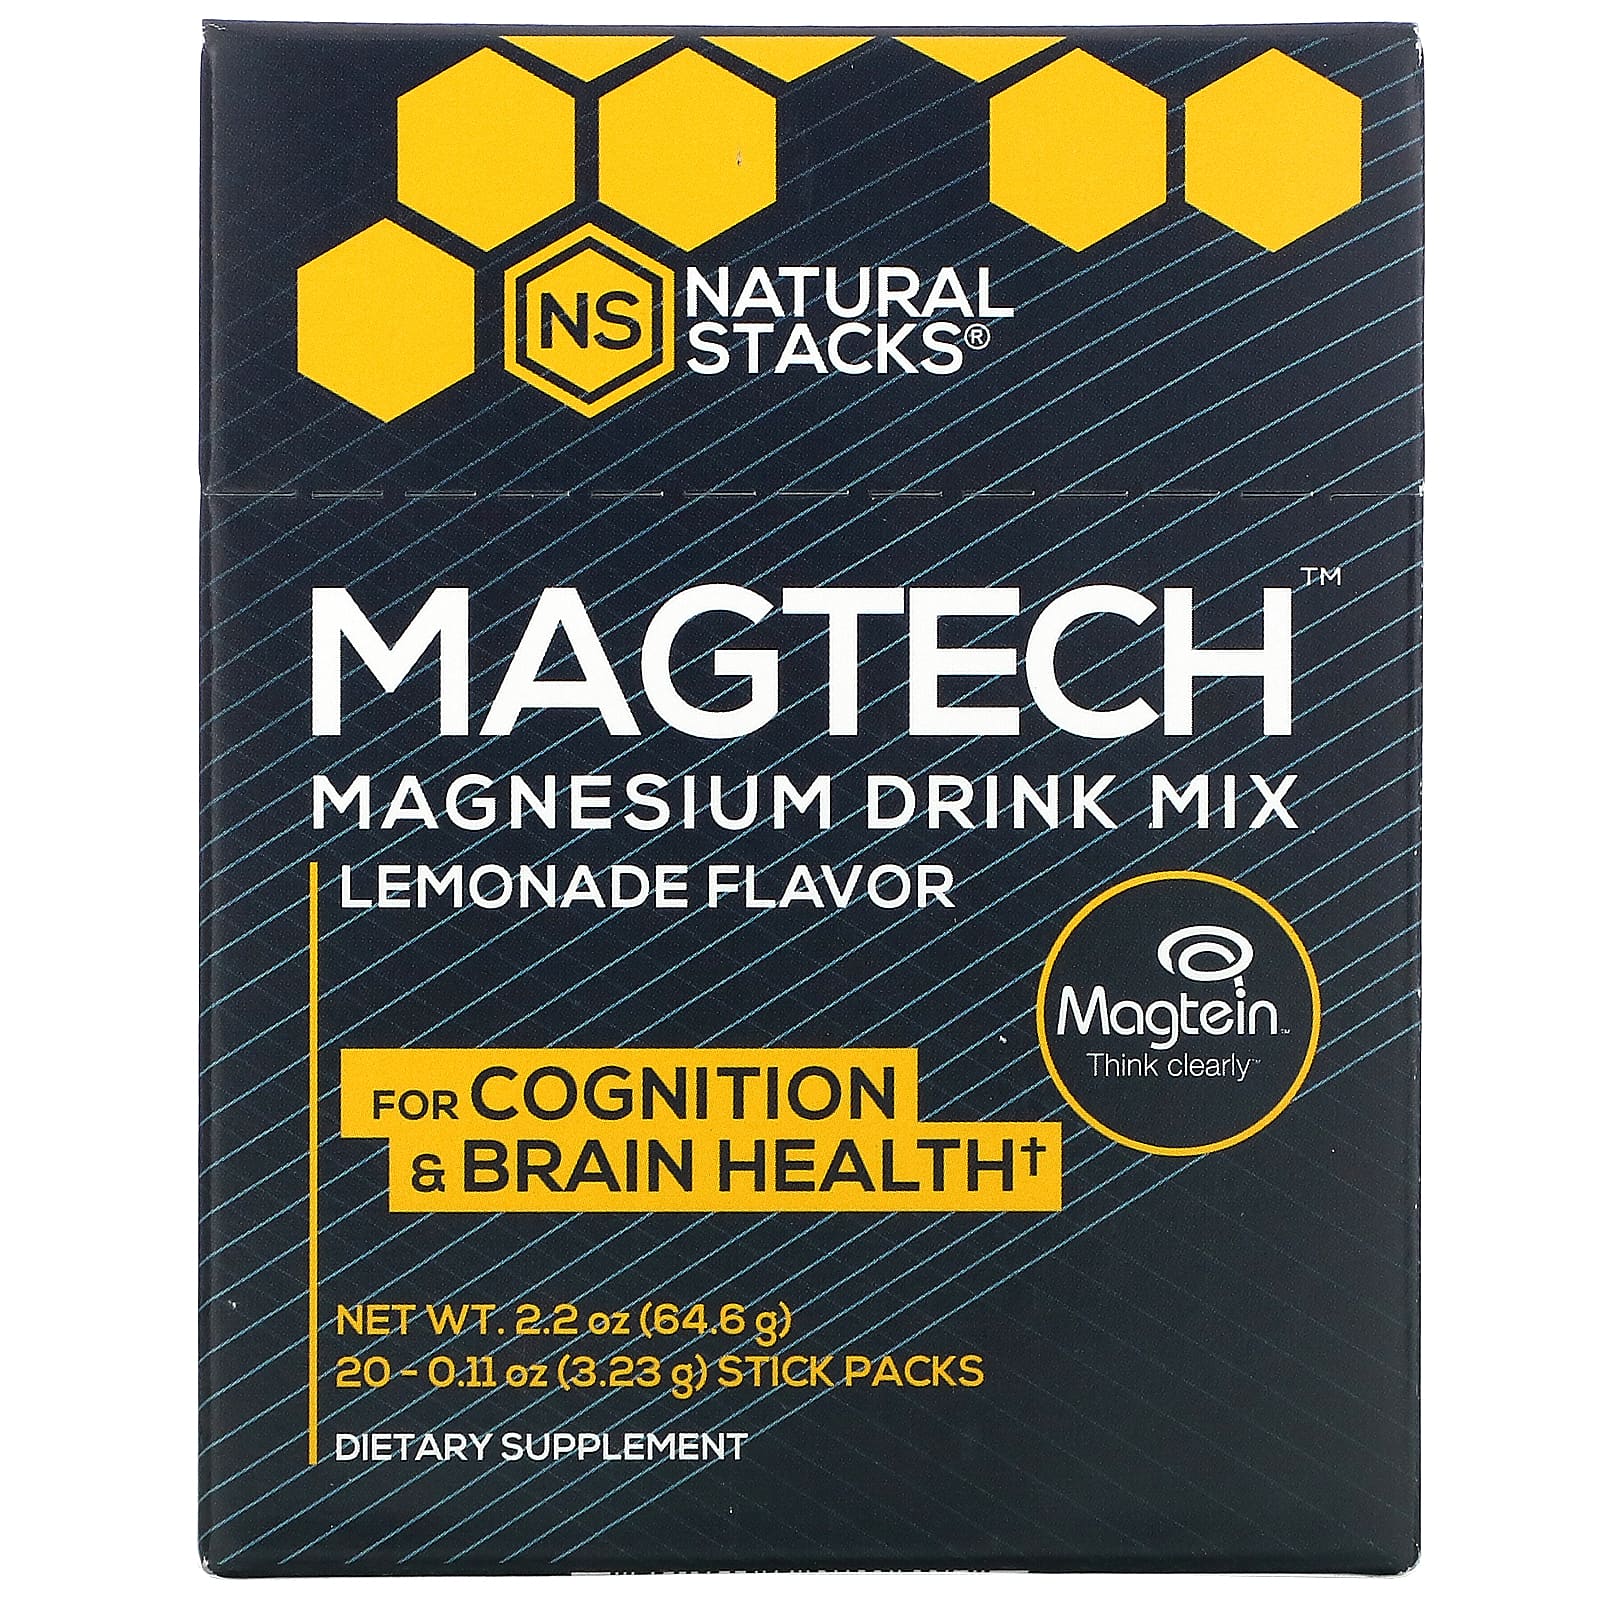 네츄럴스택스 <b>MagTech 마그네슘 드링크 믹스</b> 레모네이드 스틱팩 20개입 3.23g 0.11oz